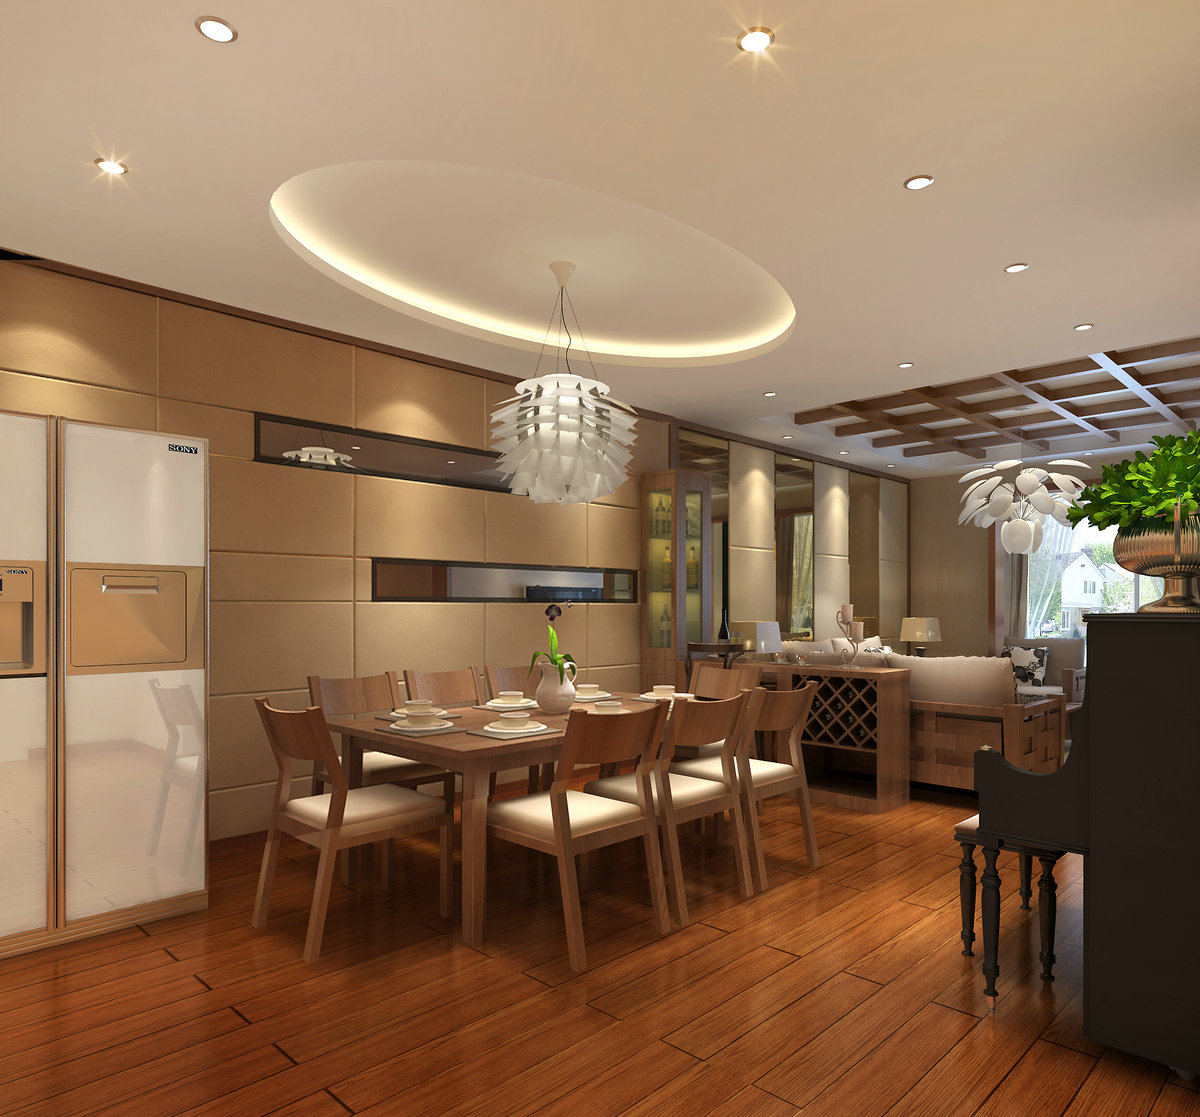 三居 简约 餐厅图片来自实创装饰晶晶在简约,温馨,舒适的三口之家的分享